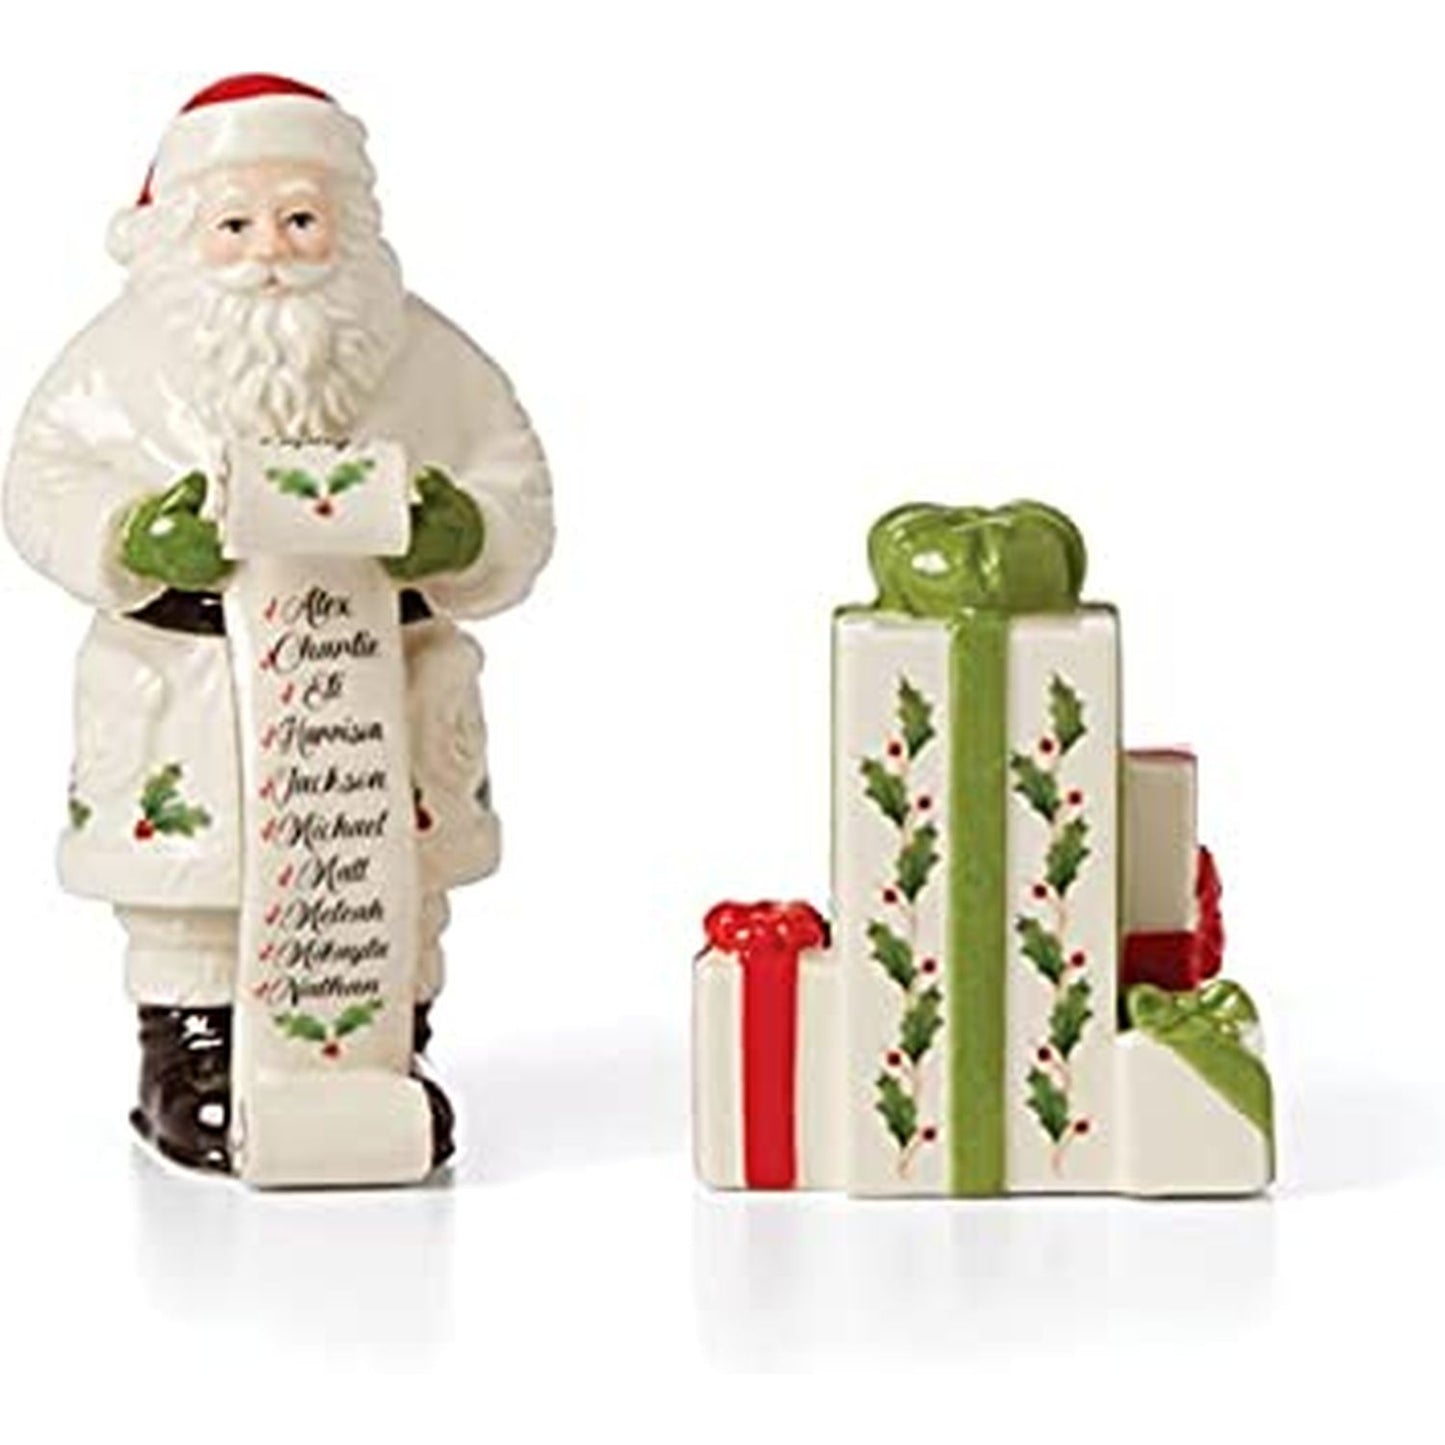 Lenox Holiday Figural Salt & Pepper Set